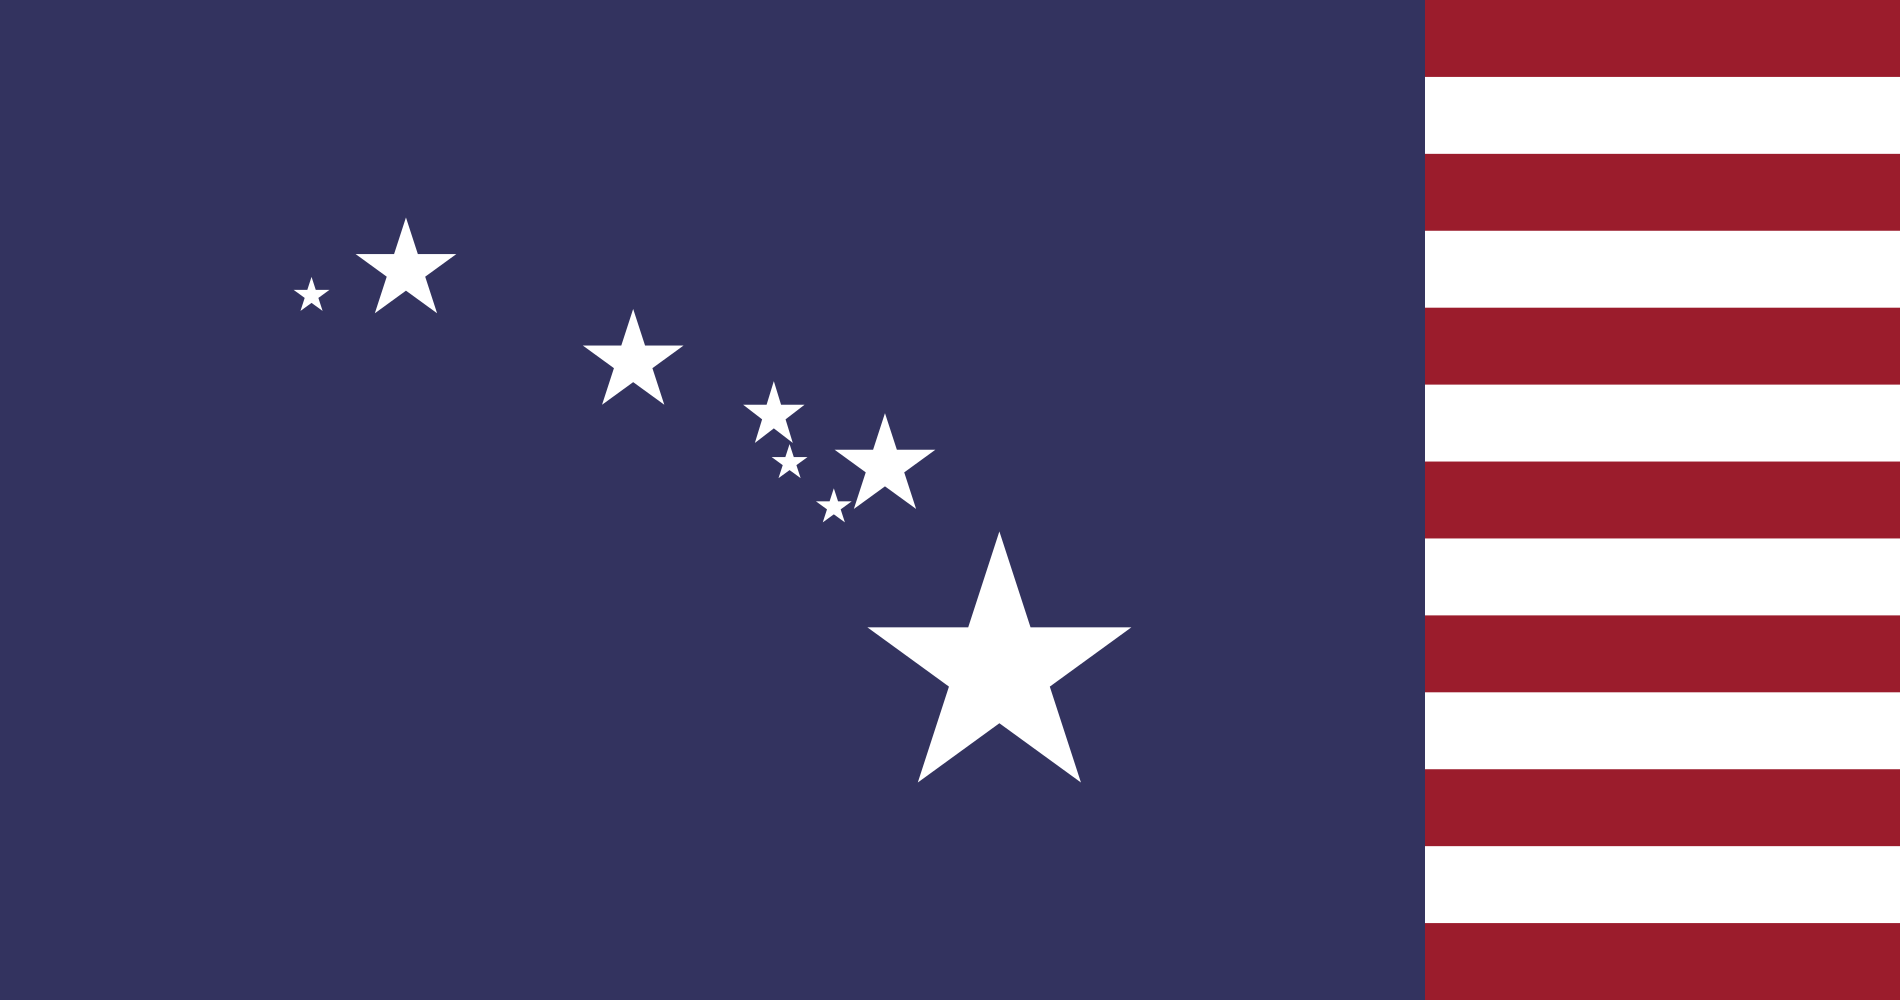 大概是想用星星表示八个岛屿,和阿拉斯加州旗神似